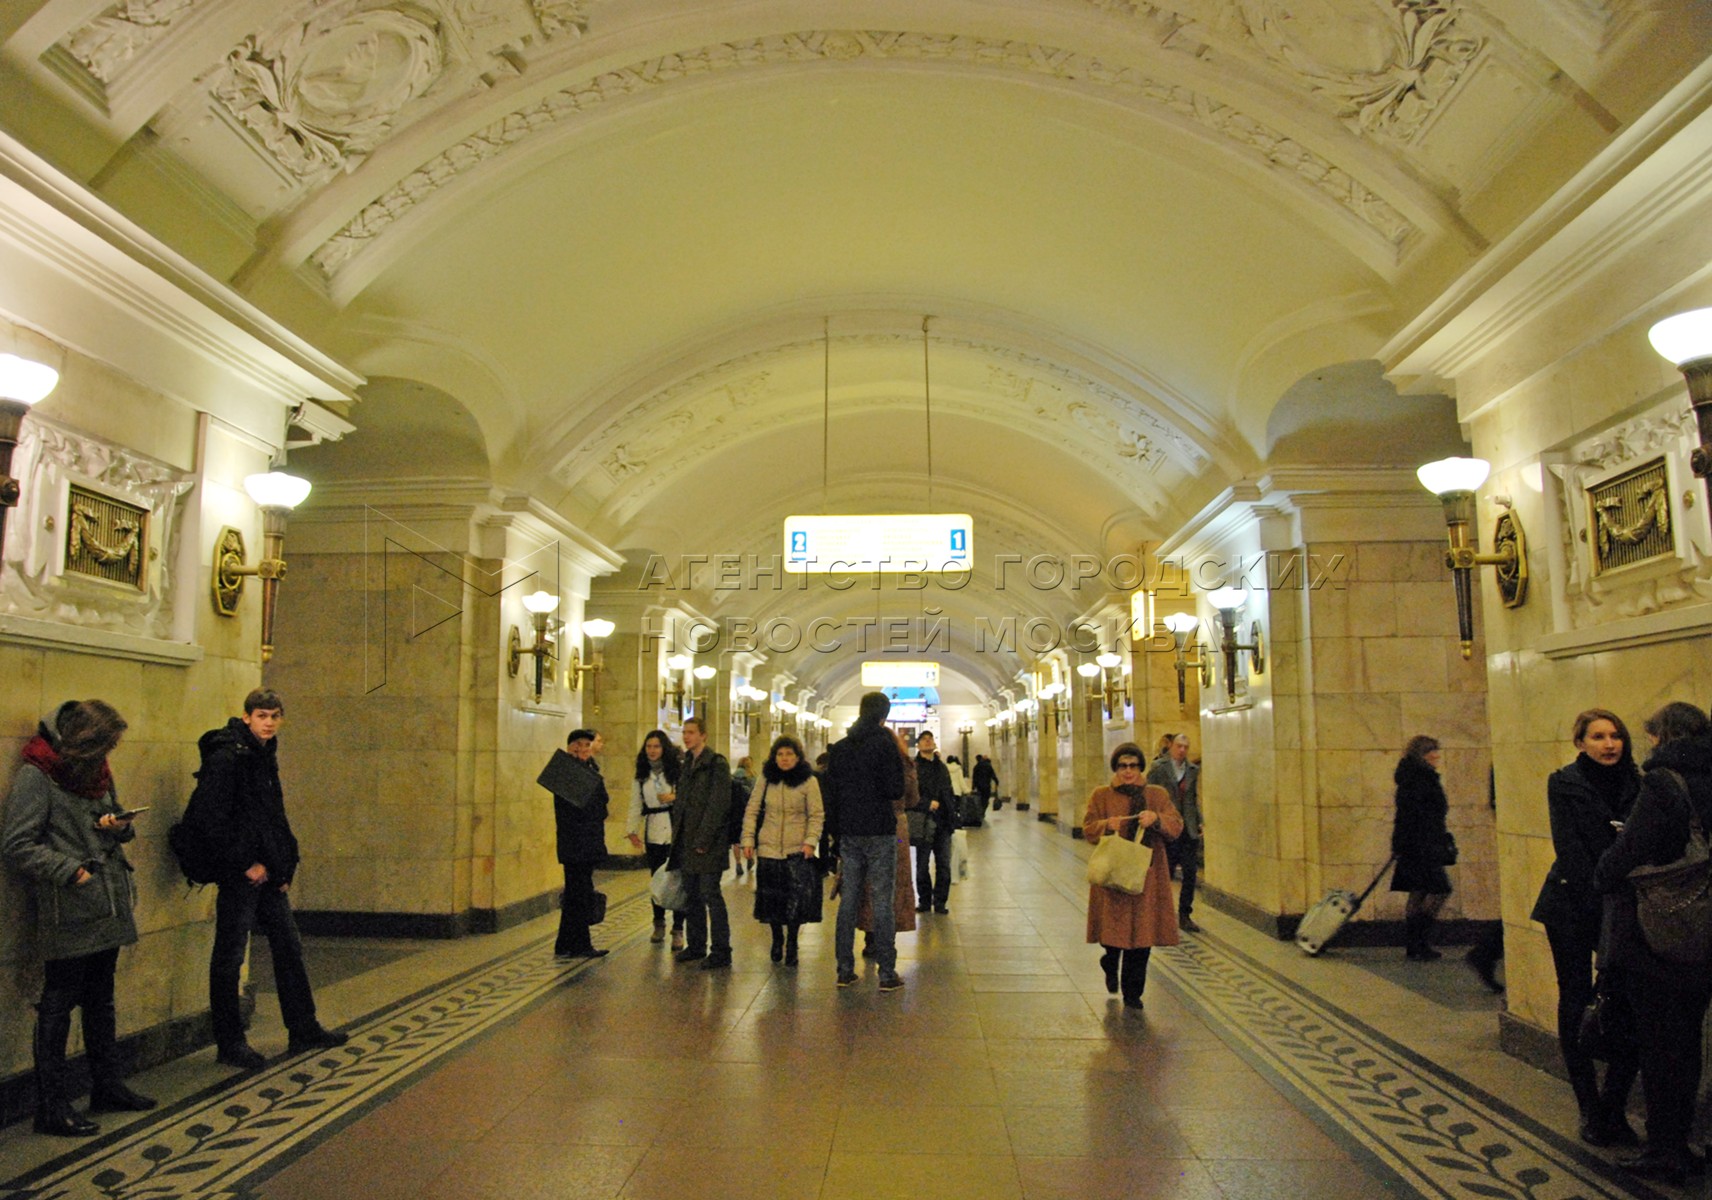 Октябрьская станция метро кольцевая линия